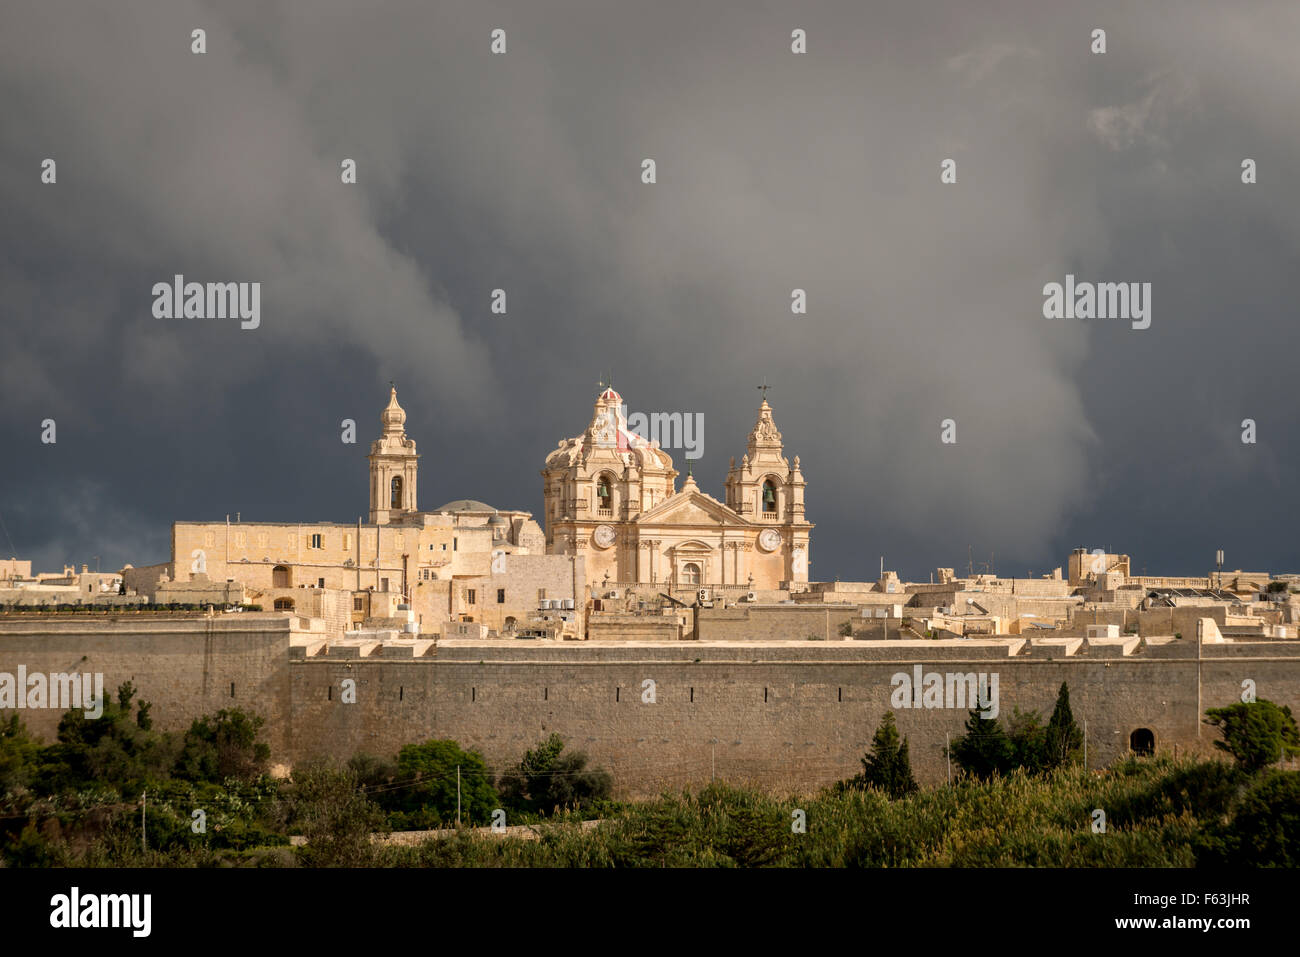 Une vue générale de la ville fortifiée de Mdina à Malte. Banque D'Images